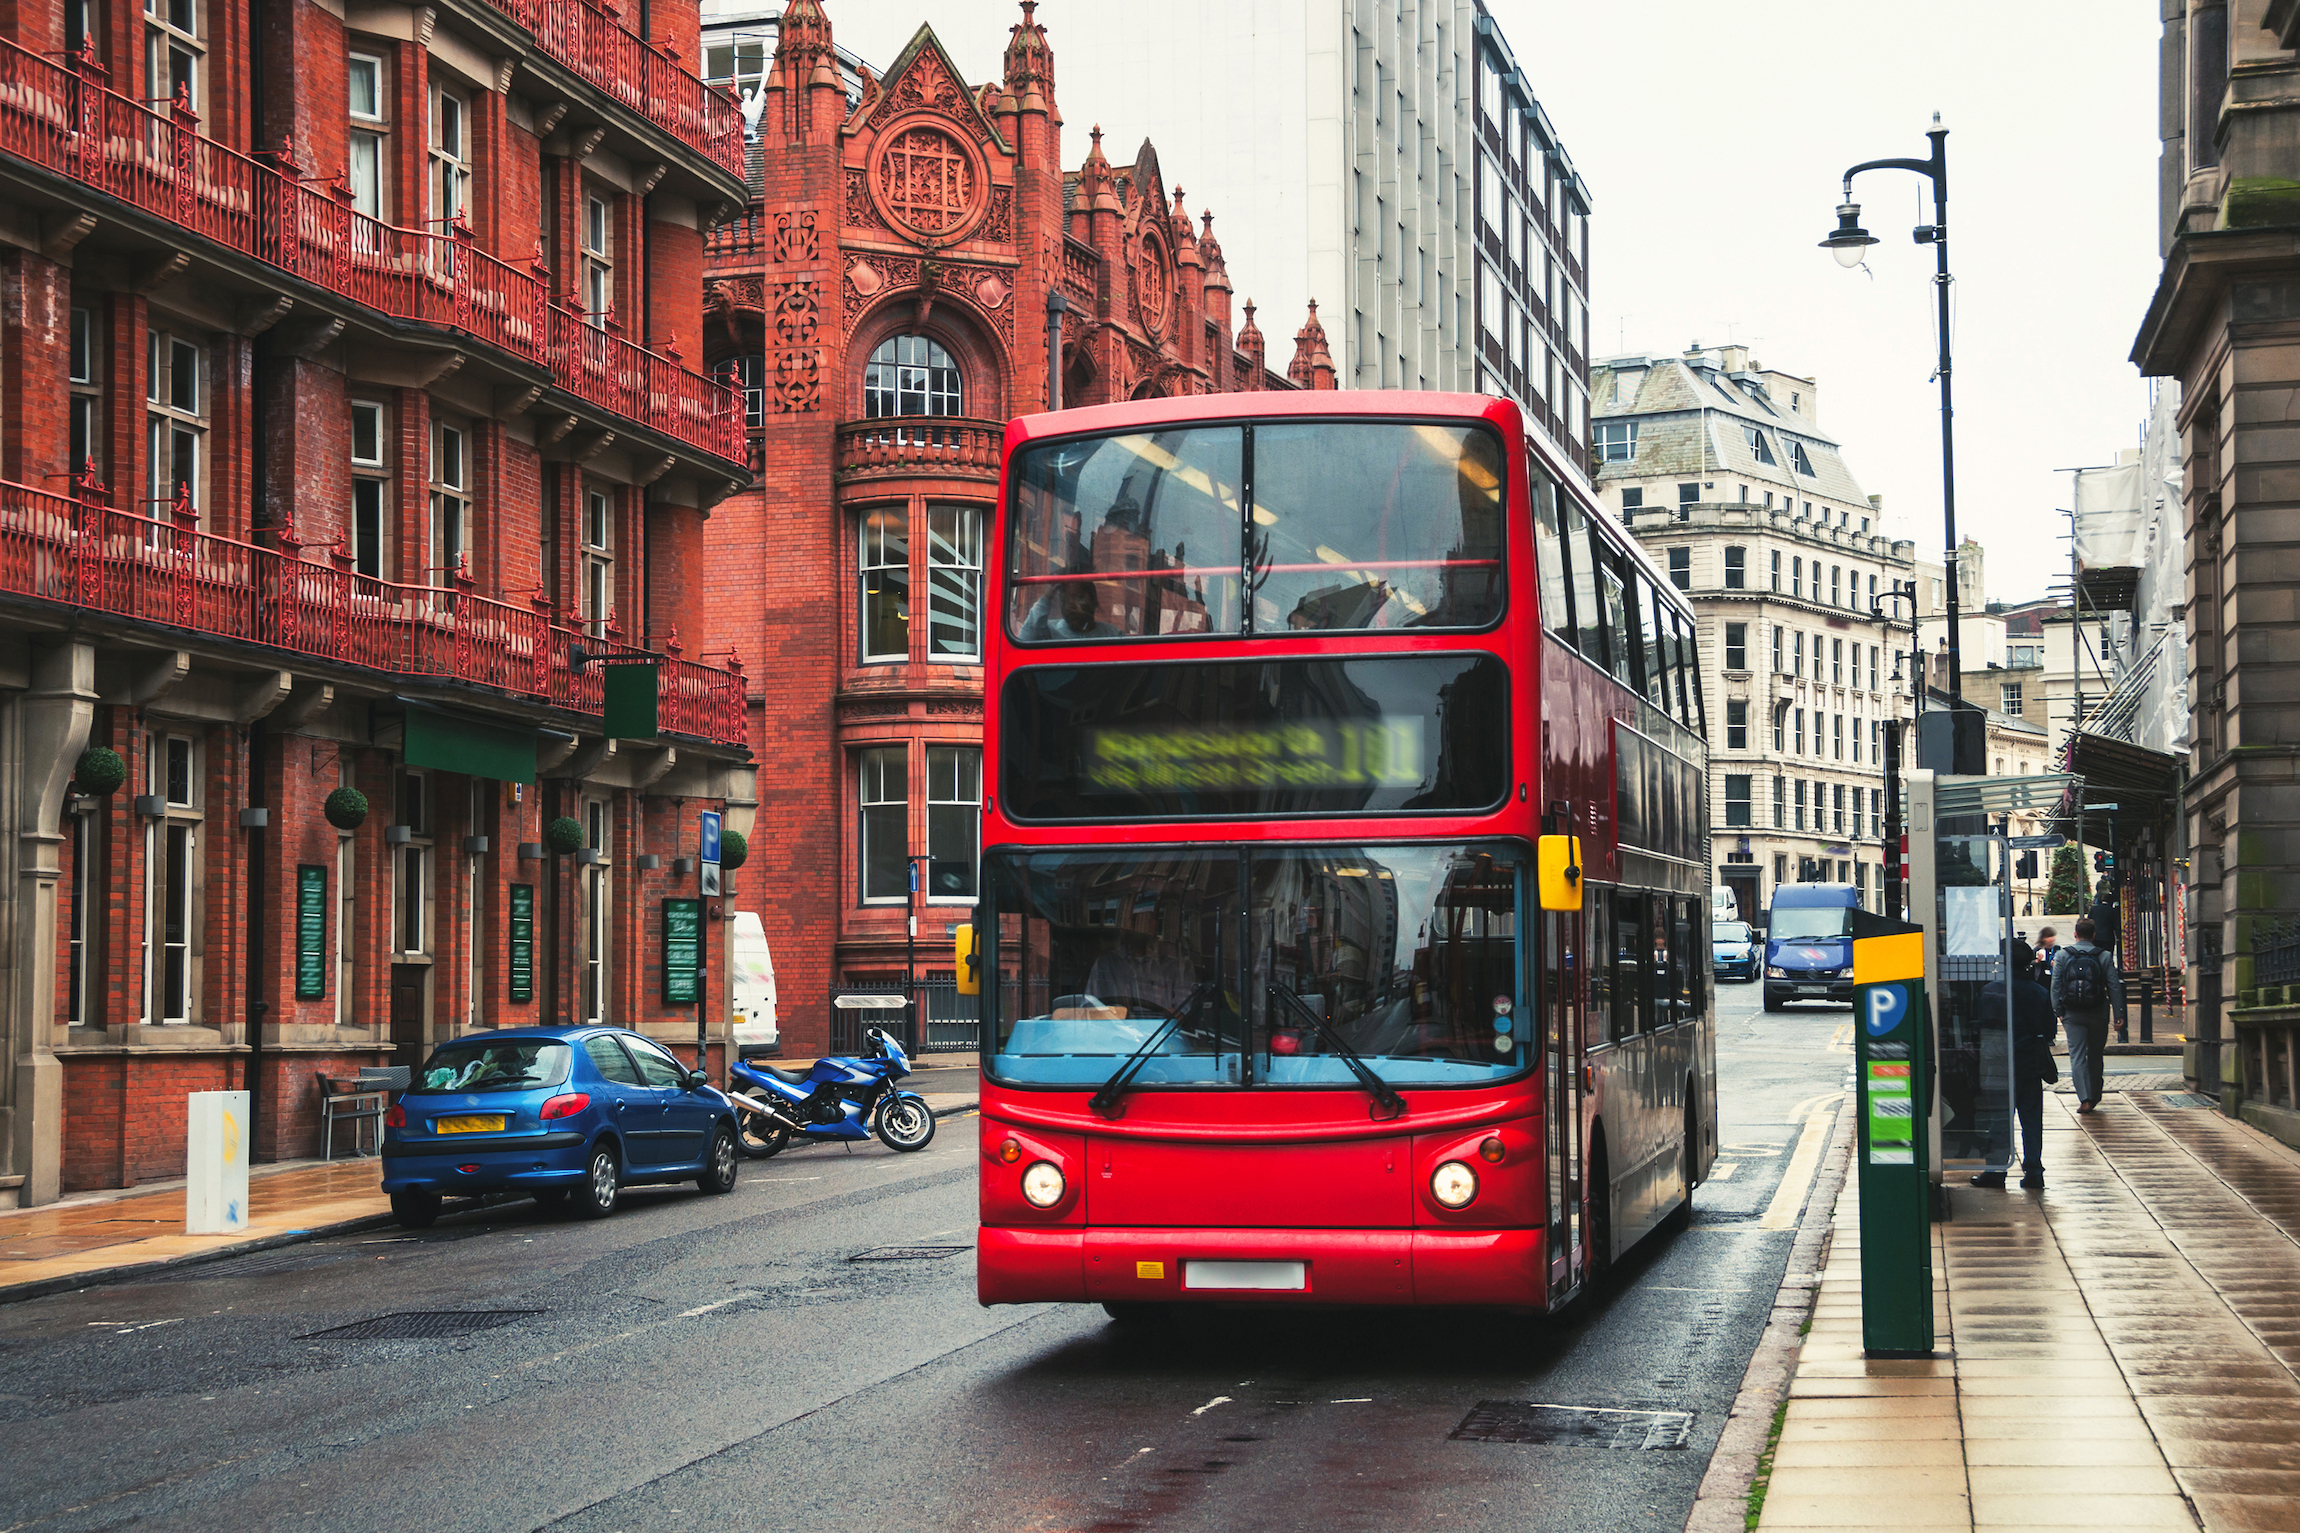 Czerwony piętrowy autobus na ulicy Birmingham, Wielka Brytania. Stary budynek zabytkowej części miasta. Samochody, słynne restauracje i puby